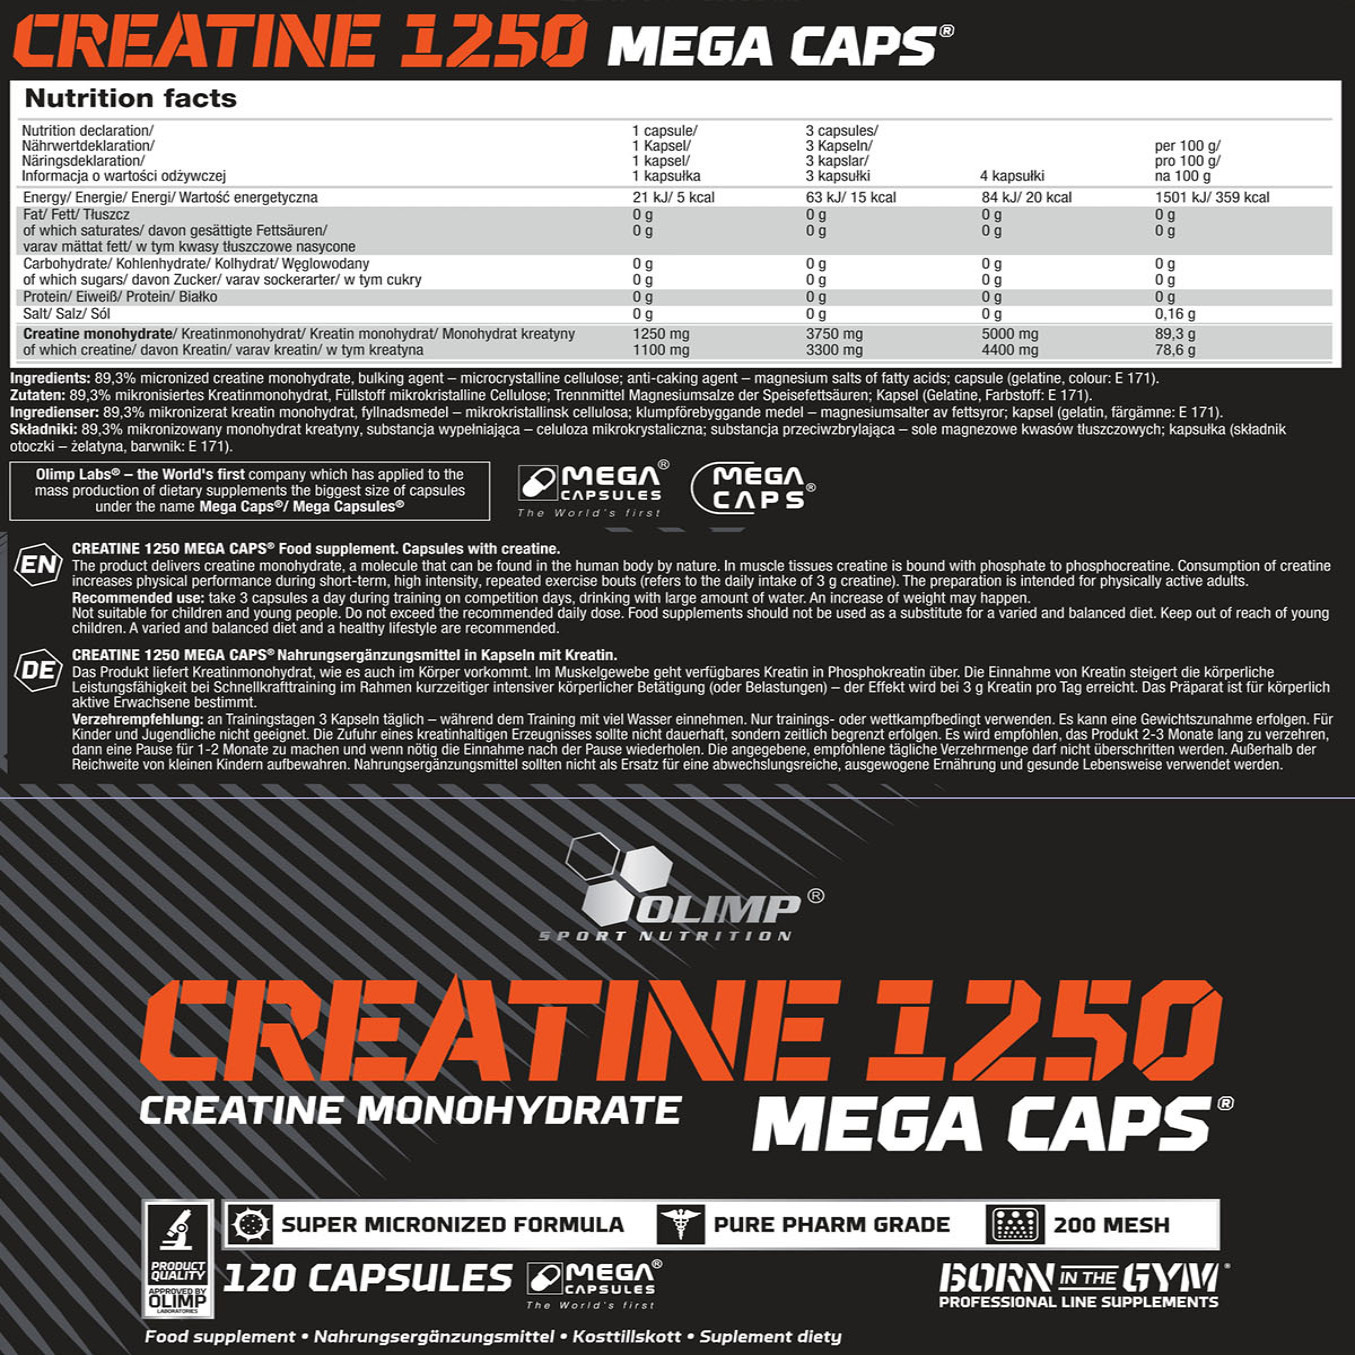 OLIMP CREATINE MONOHYDRATE MEGA CAPS® 120 CAPS À 1250MG